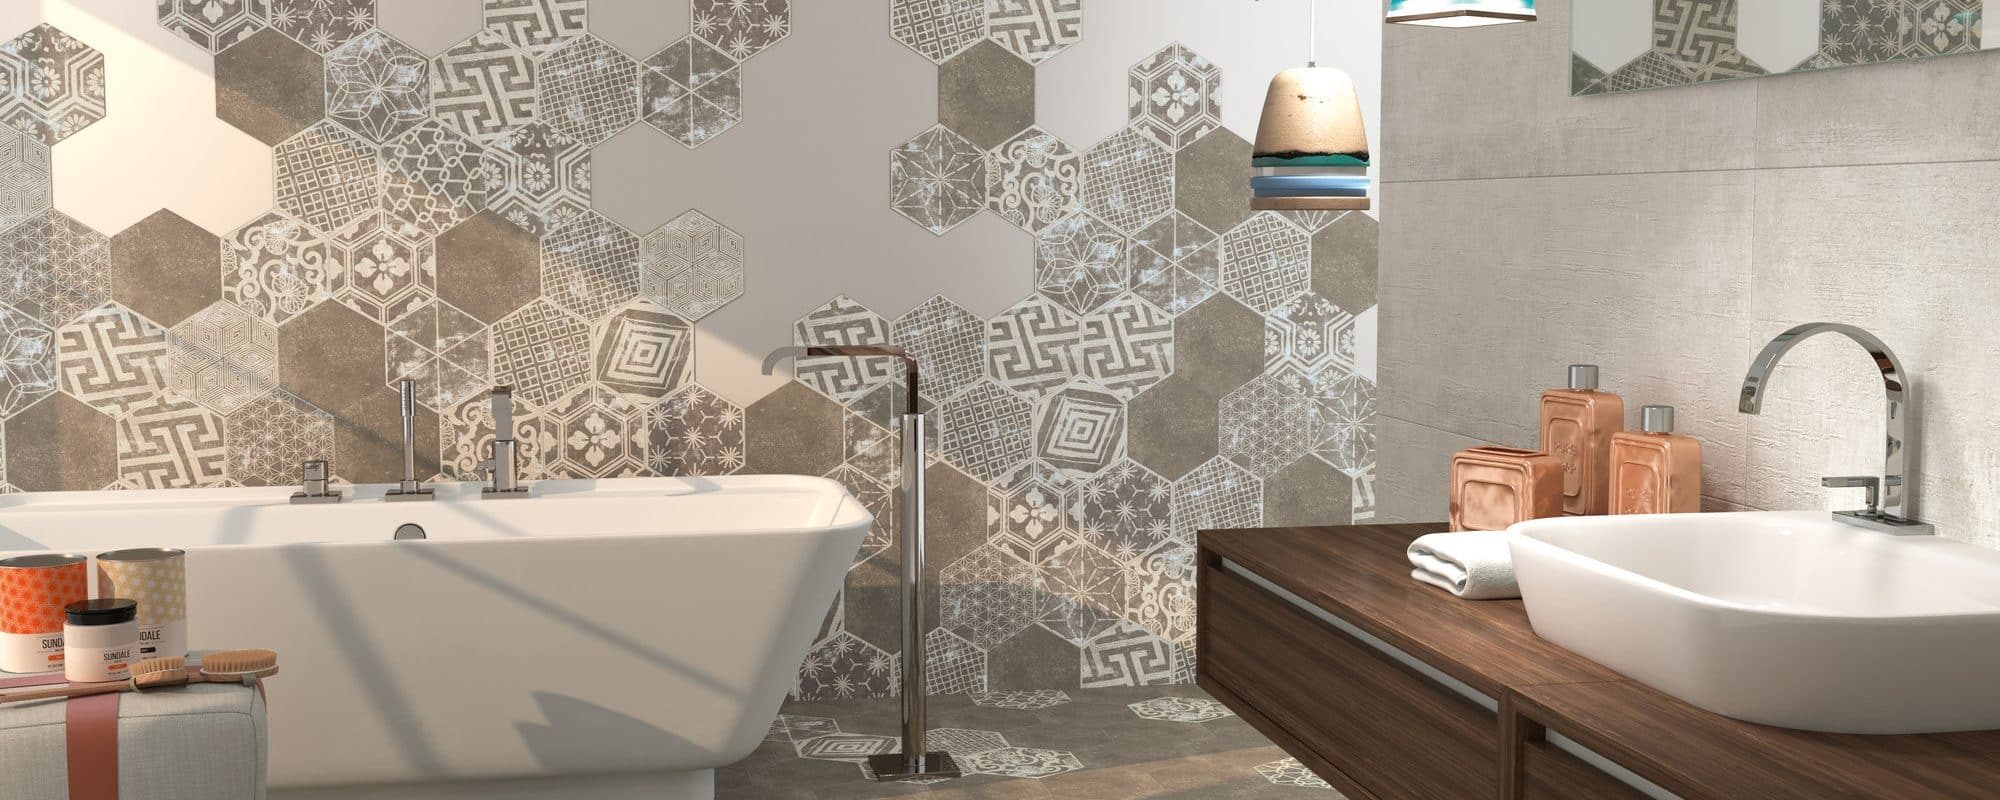 Cement Tiles Porcelain Tiles for bathroom uk slider 6